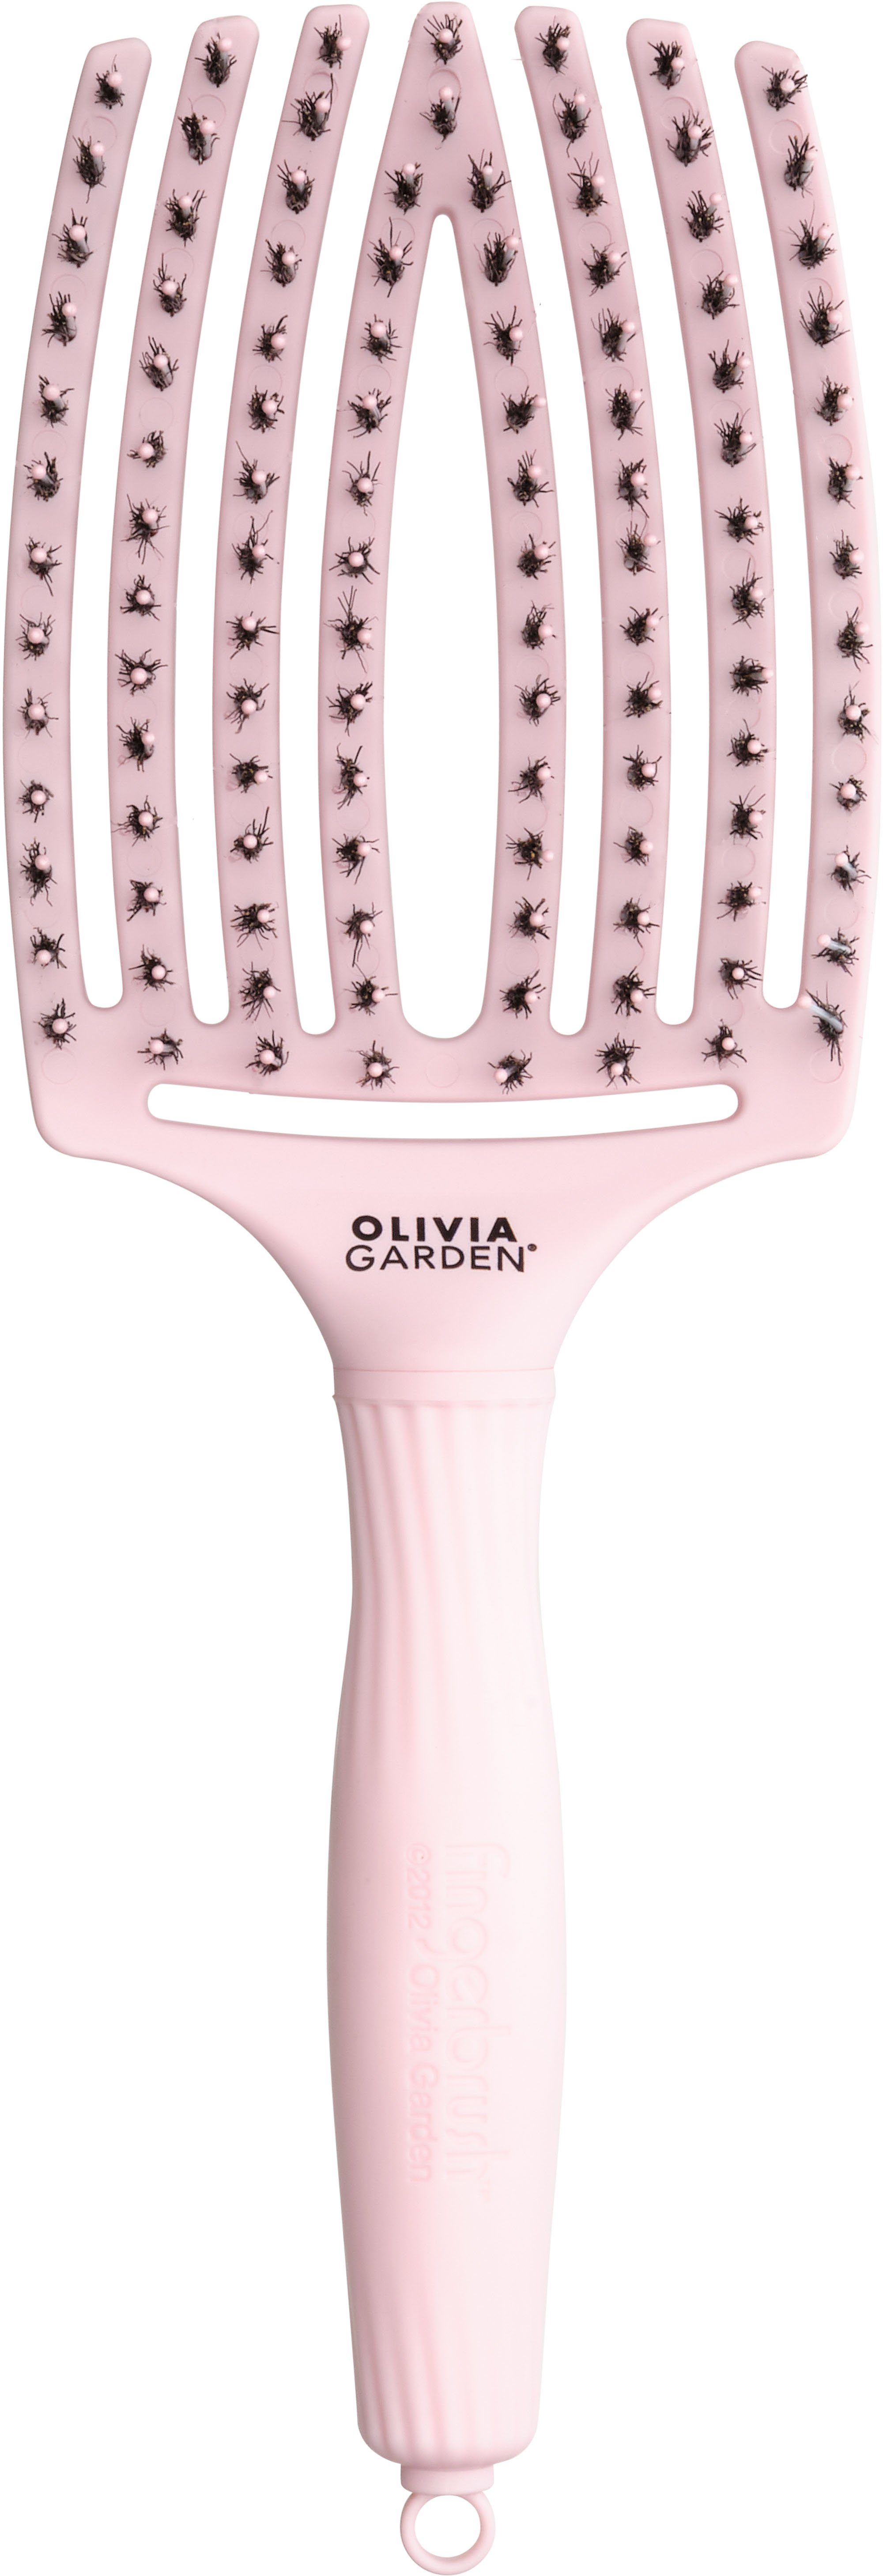 Combo Haarentwirrbürste Fingerbrush GARDEN OLIVIA Pink large